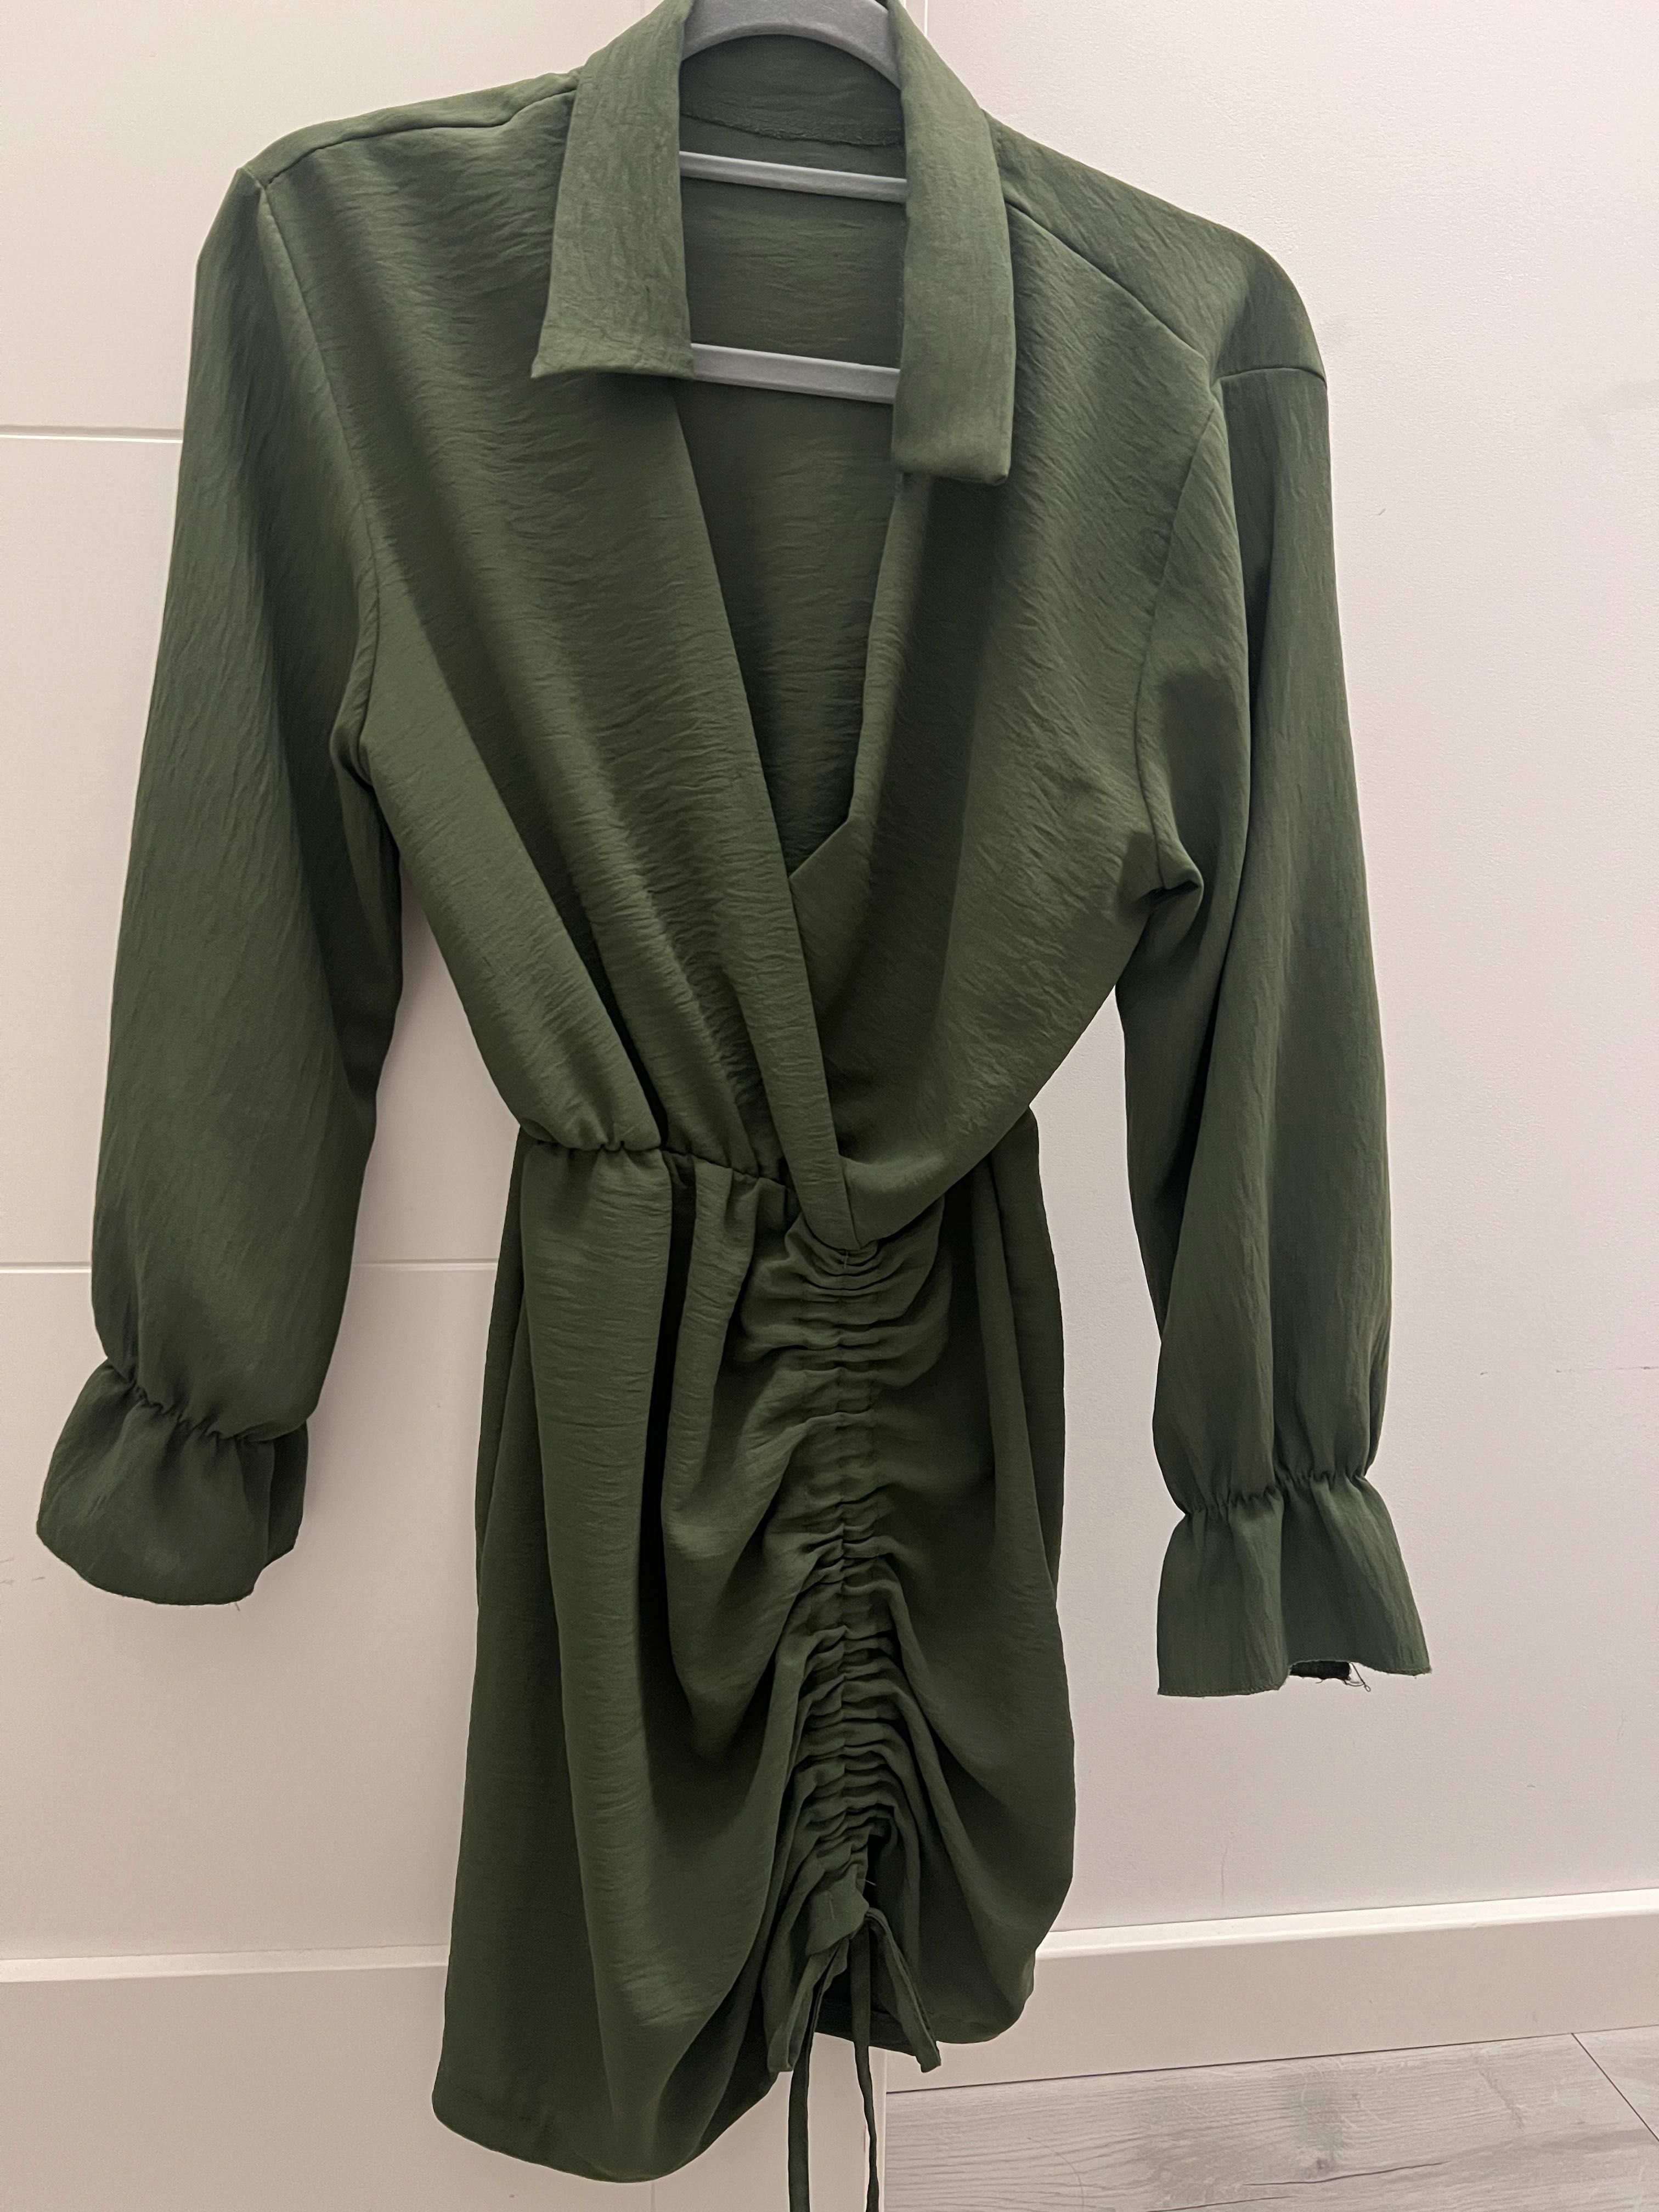 Sukienka marszczona khaki zielona rozmiar  xs/s  34/36